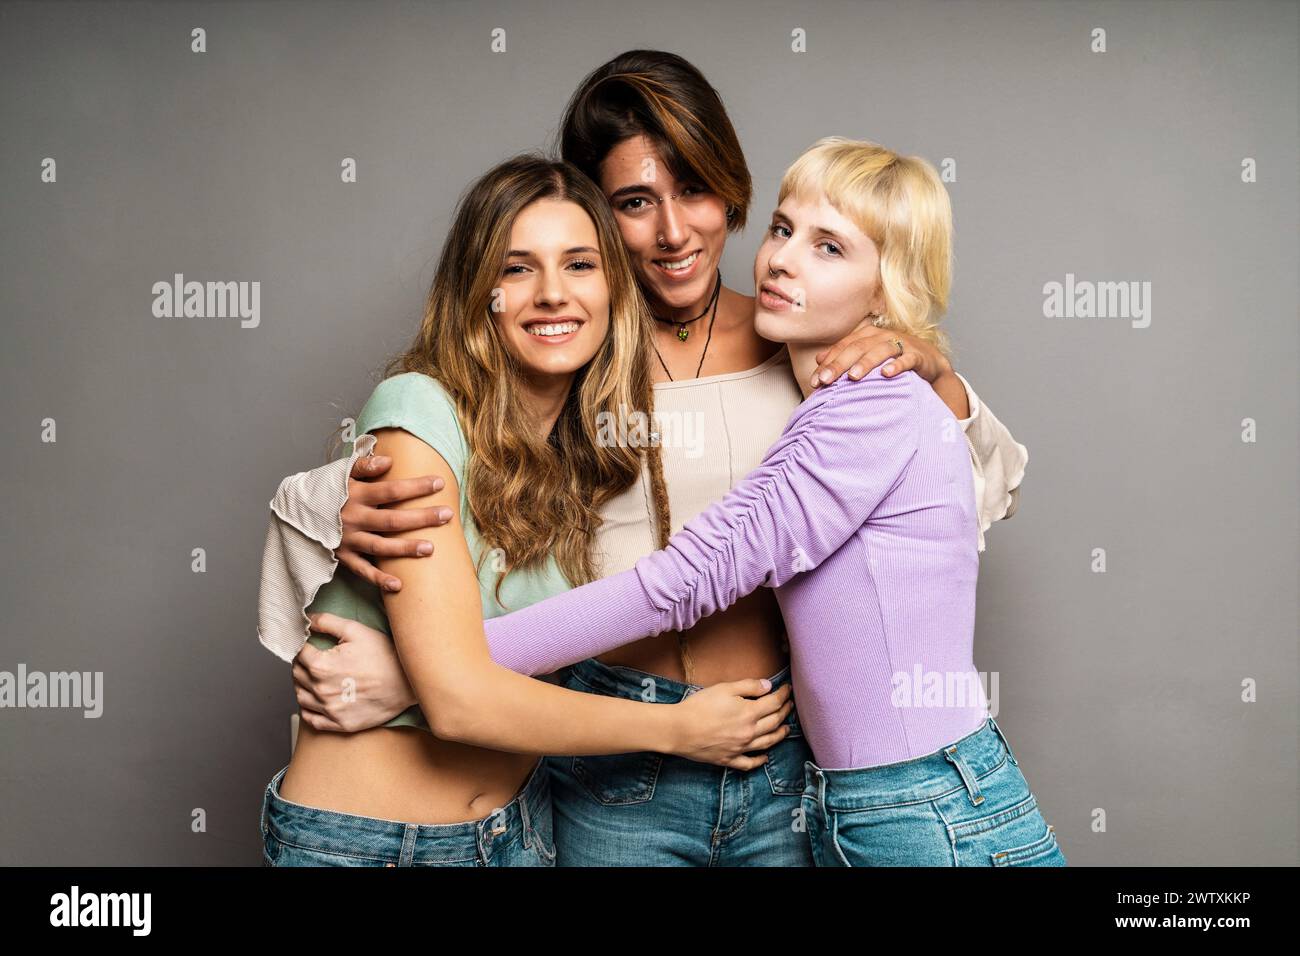 Gruppe von drei jungen Frauen - umarmen - multirassische Freundinnen, die lächeln, sich verbinden und umarmen - Vielfalt und Zusammengehörigkeit vertreten; Stockfoto